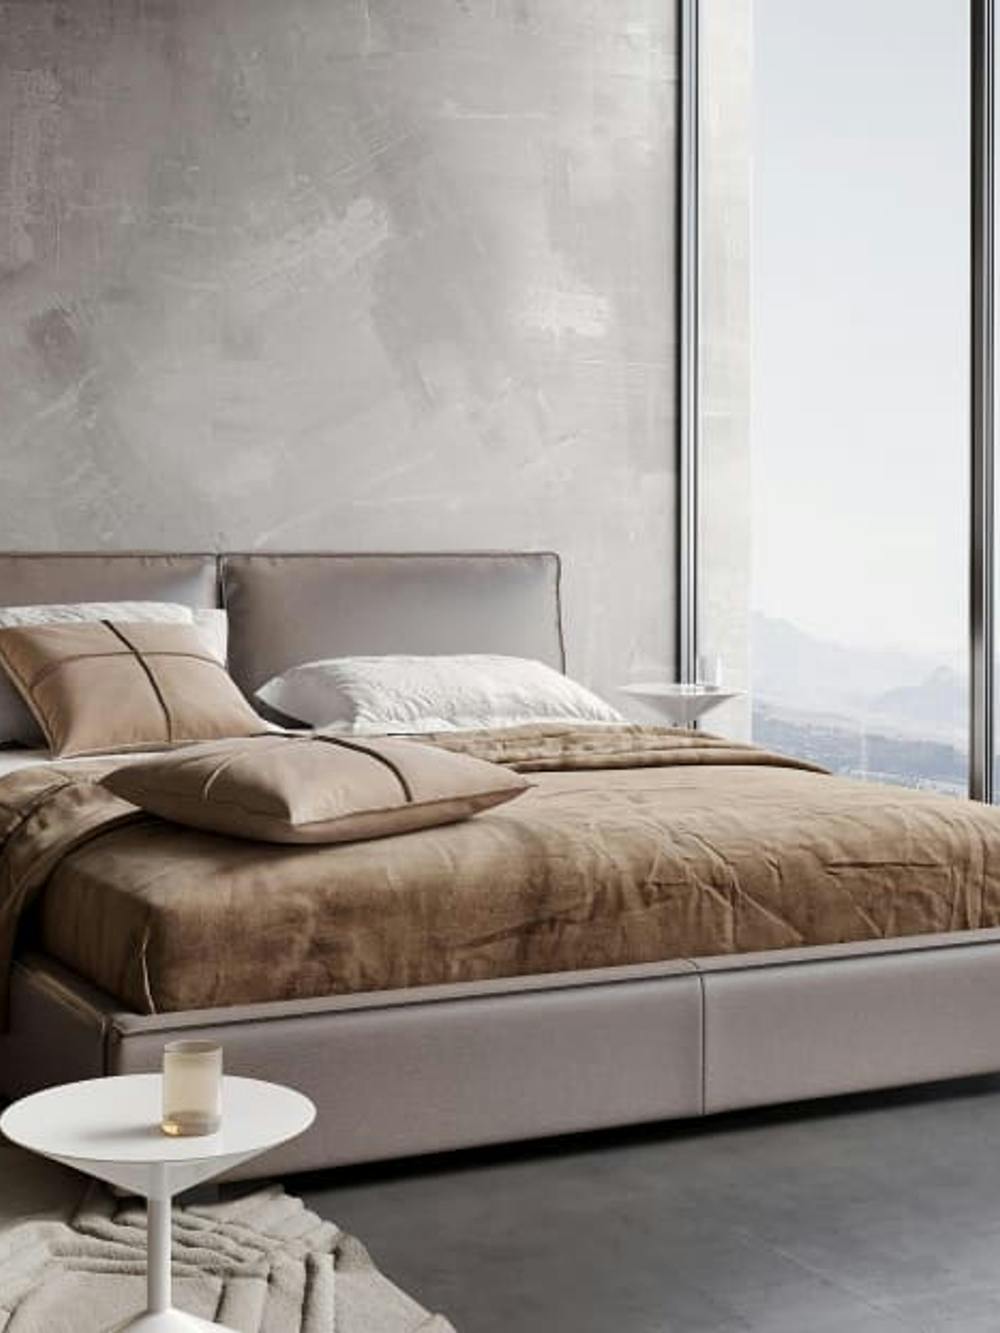 Przestronna sypialnia z dużym łóżkiem pufem stolikami z pięknym widokiem